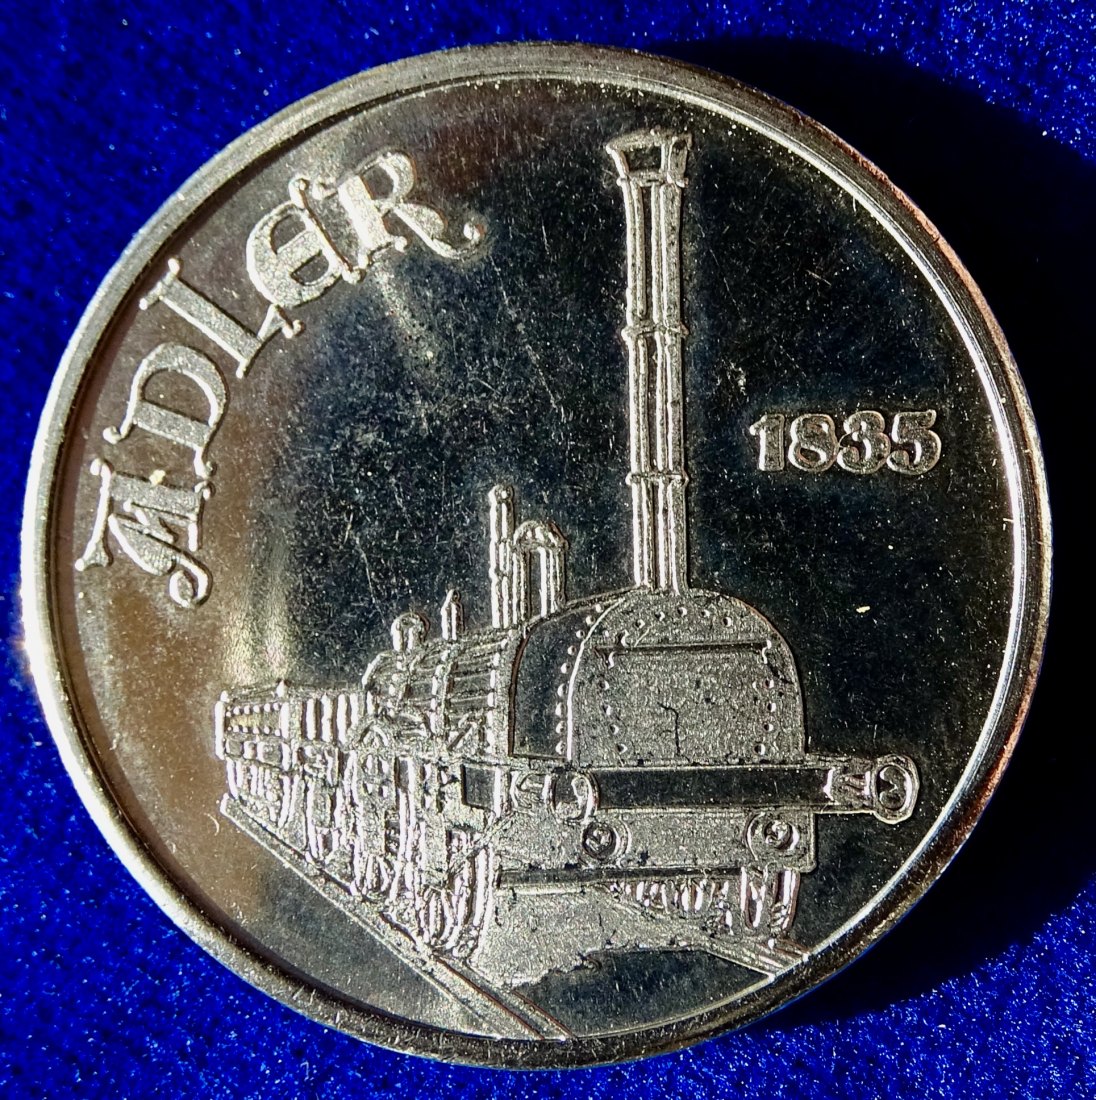  150 Jahre deutsche Eisenbahnen DDR Ministerium für Verkehr Medaille 1985 Berlin   